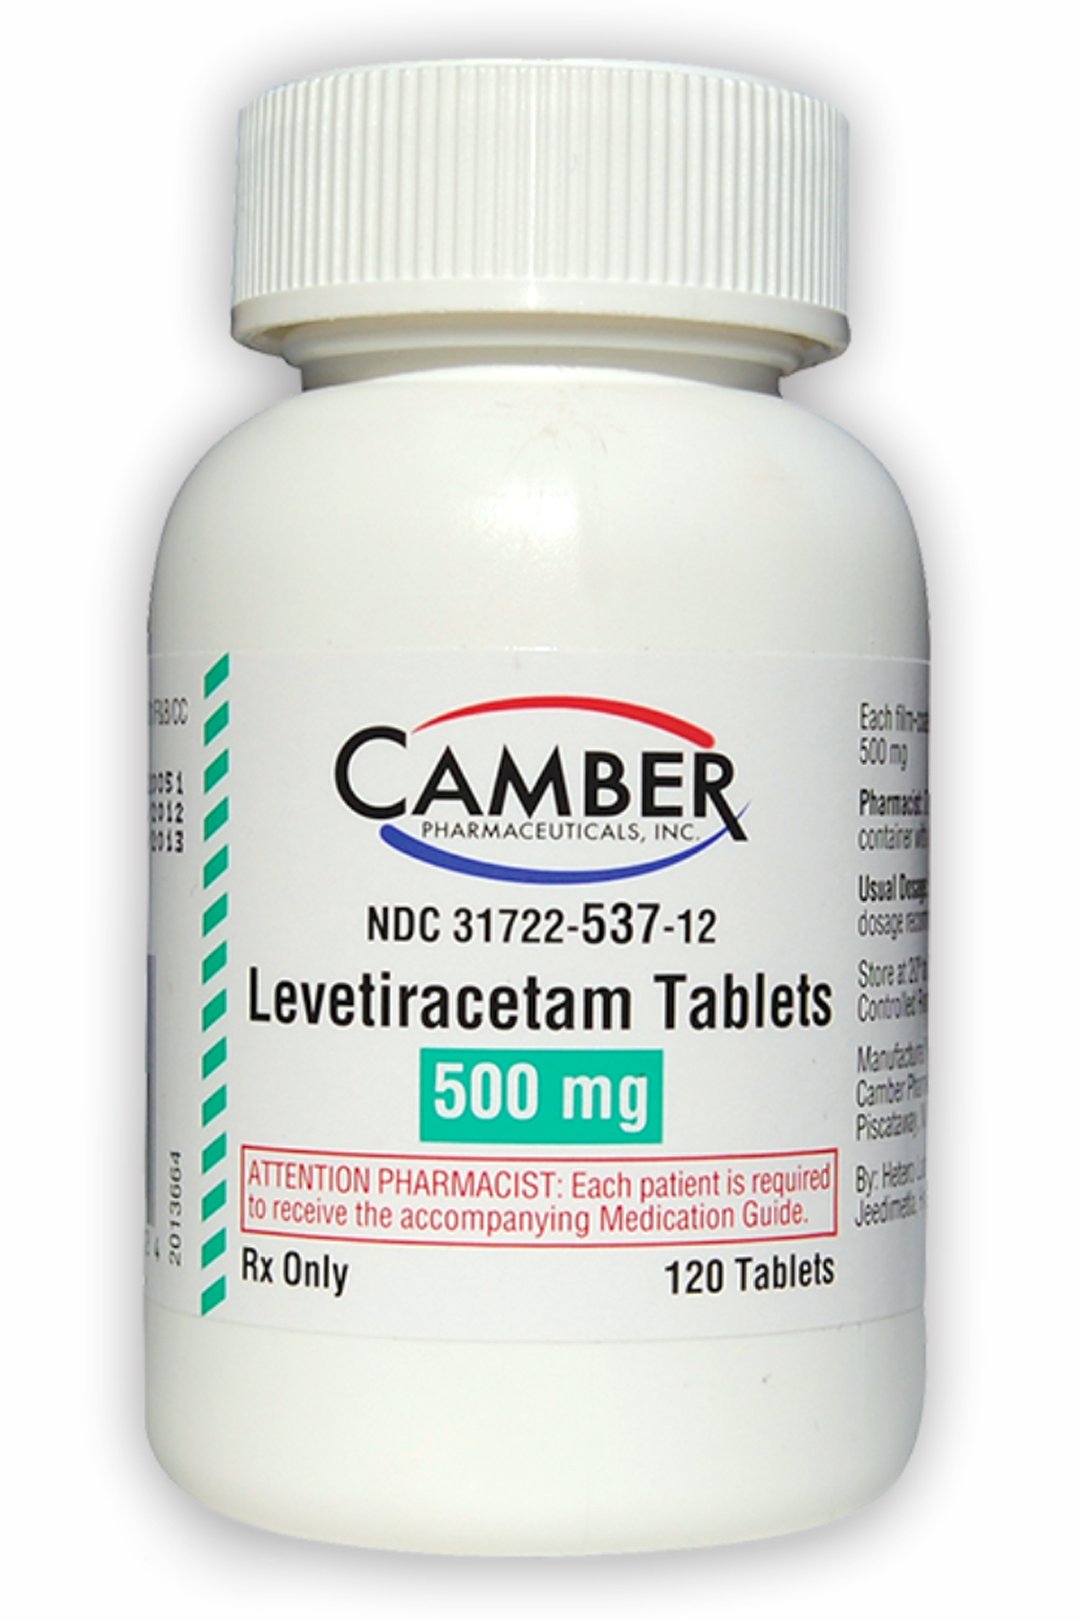 Levetiracetam (brand names: Keppra®, Elepsia®, Spritam®)